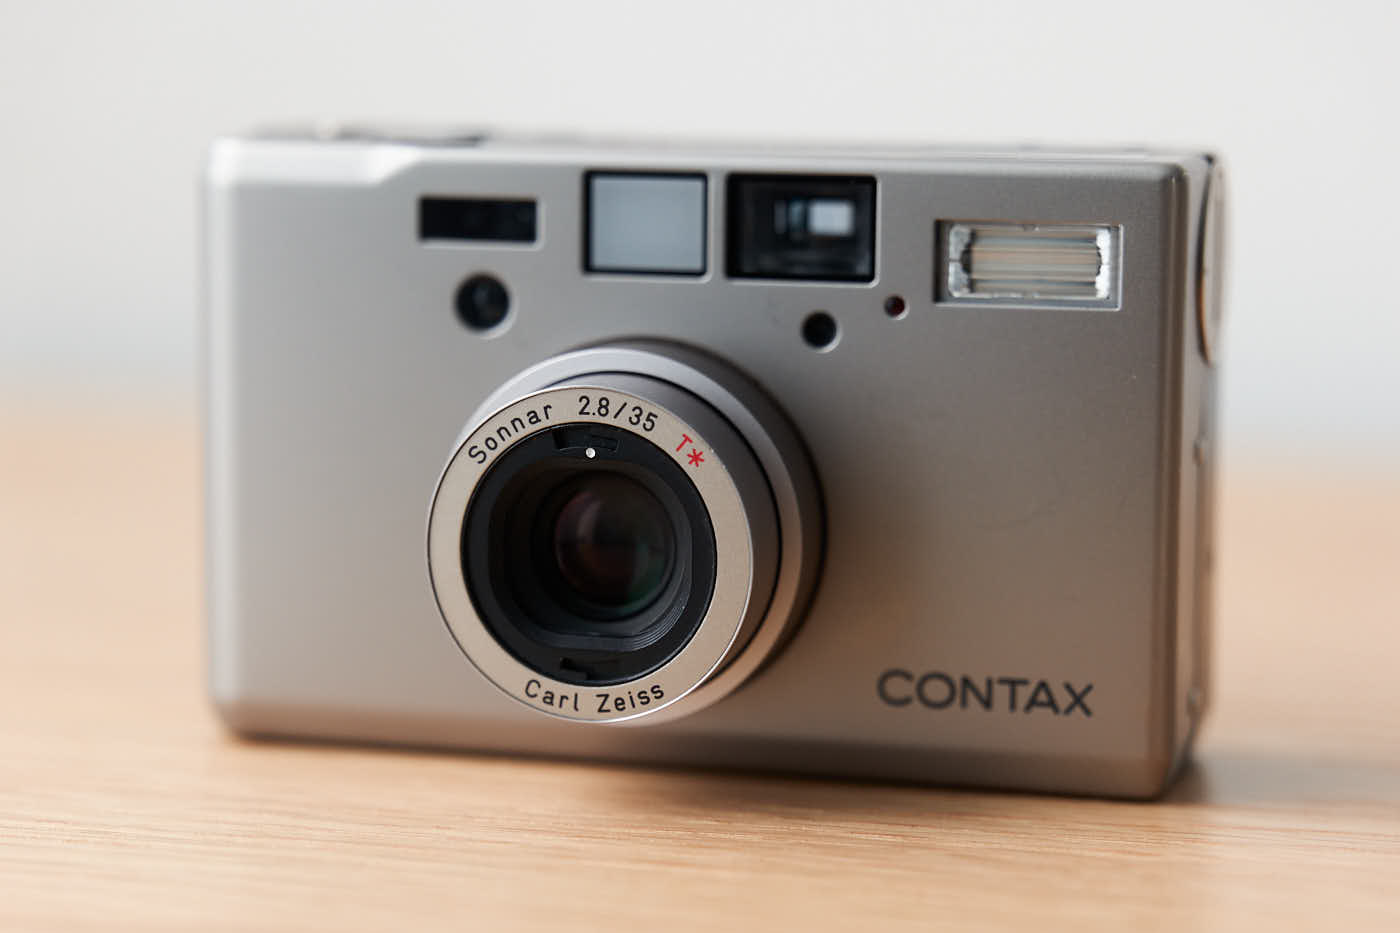 ウクライナ情勢緊迫化 CONTAX コンパクトフィルムカメラ DateBack T3 フィルムカメラ